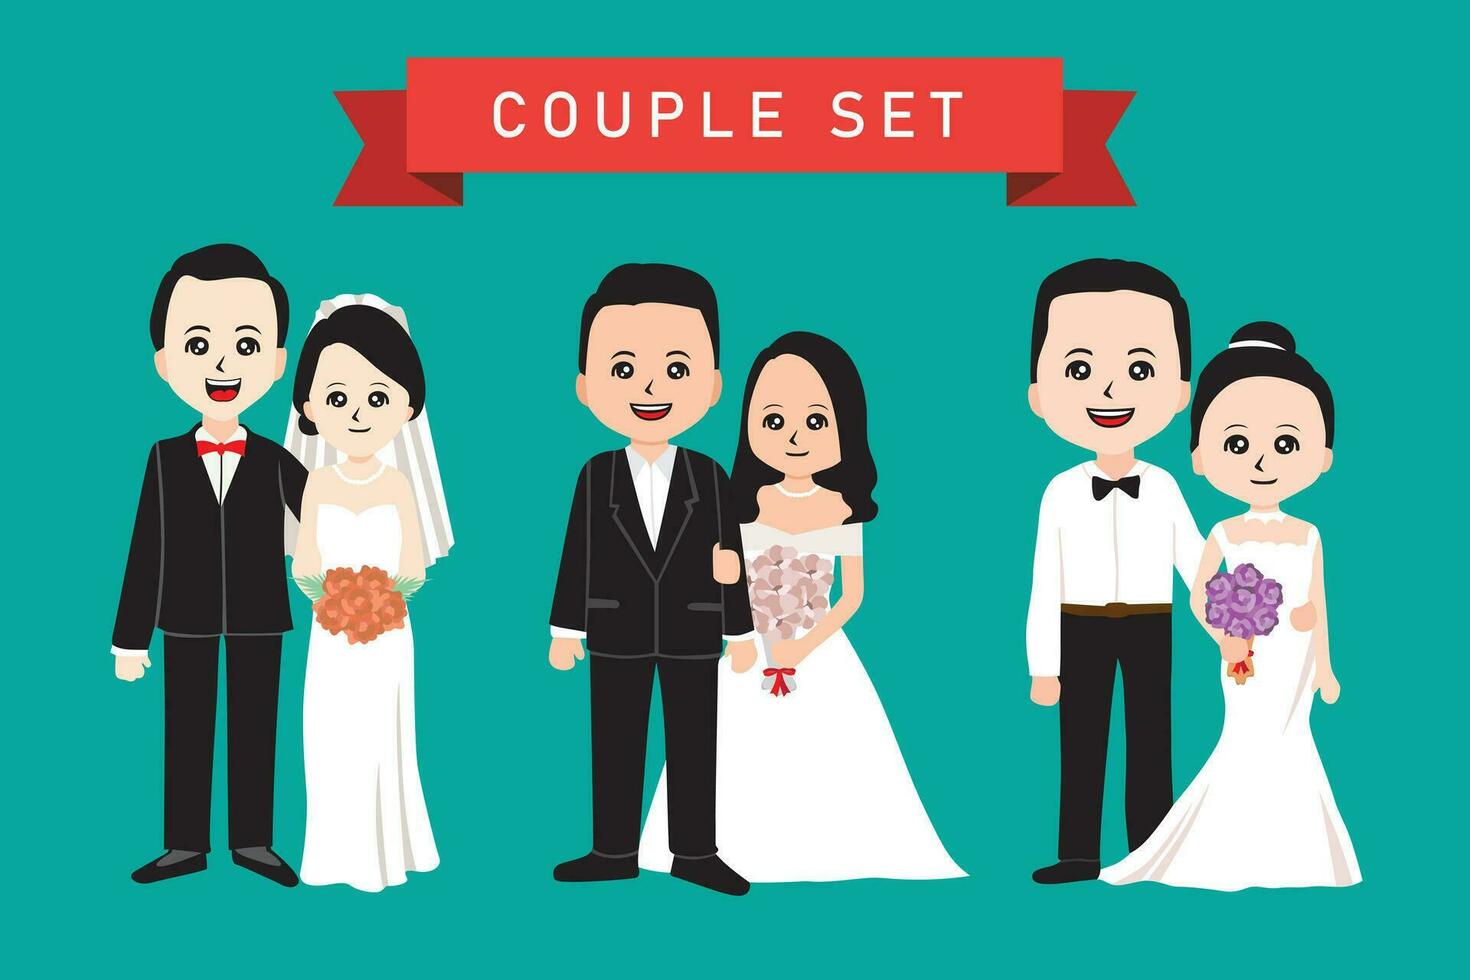 Wedding couple vector illustration. Flat cartoon style.